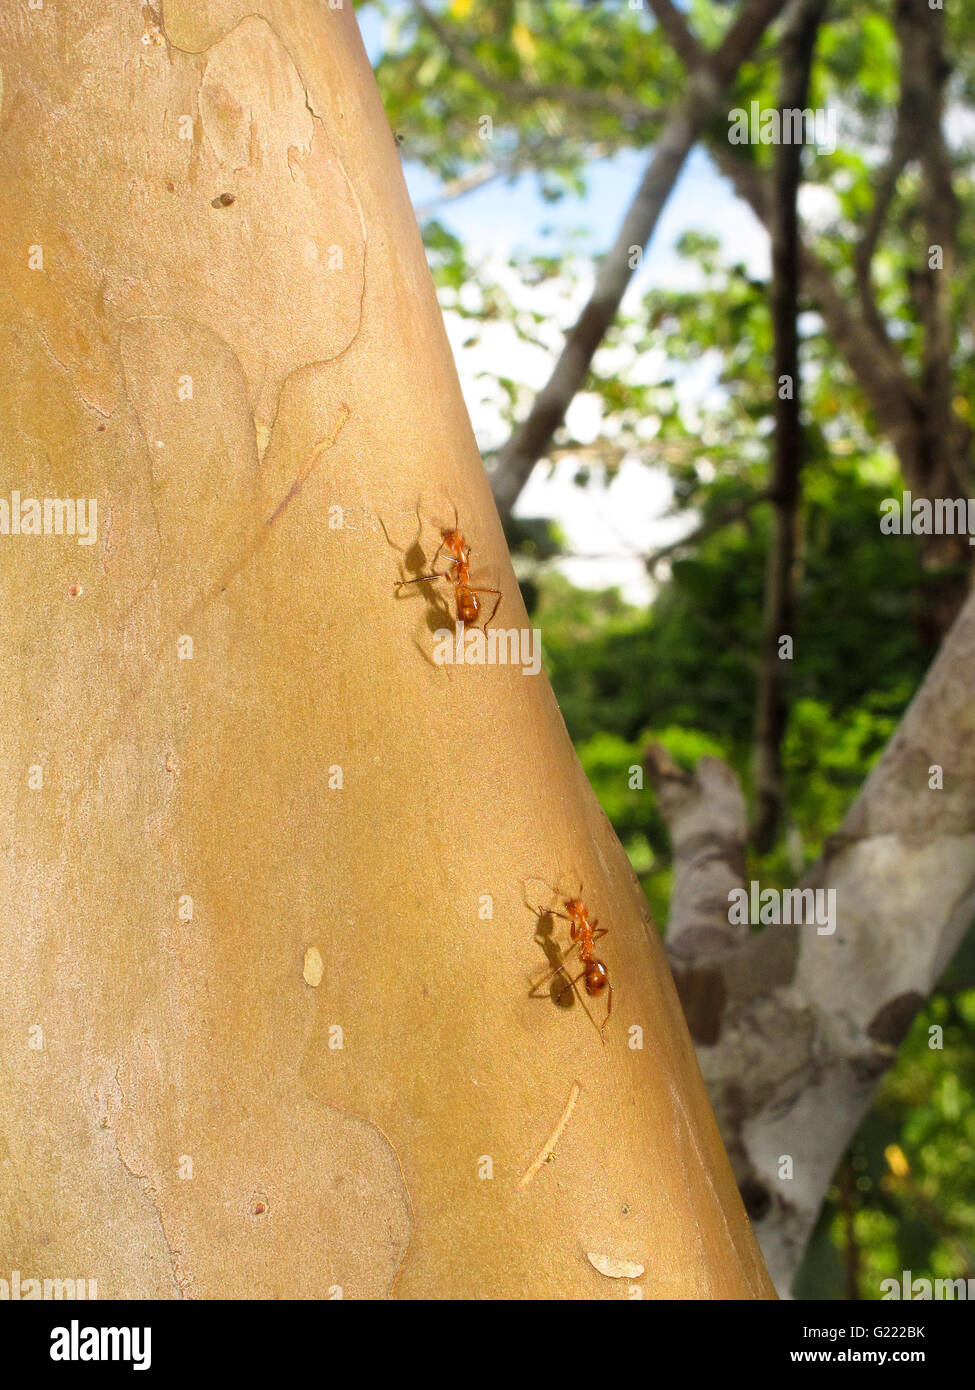 Ants. Remoyacu. Amazon peruvian. Peru Stock Photo